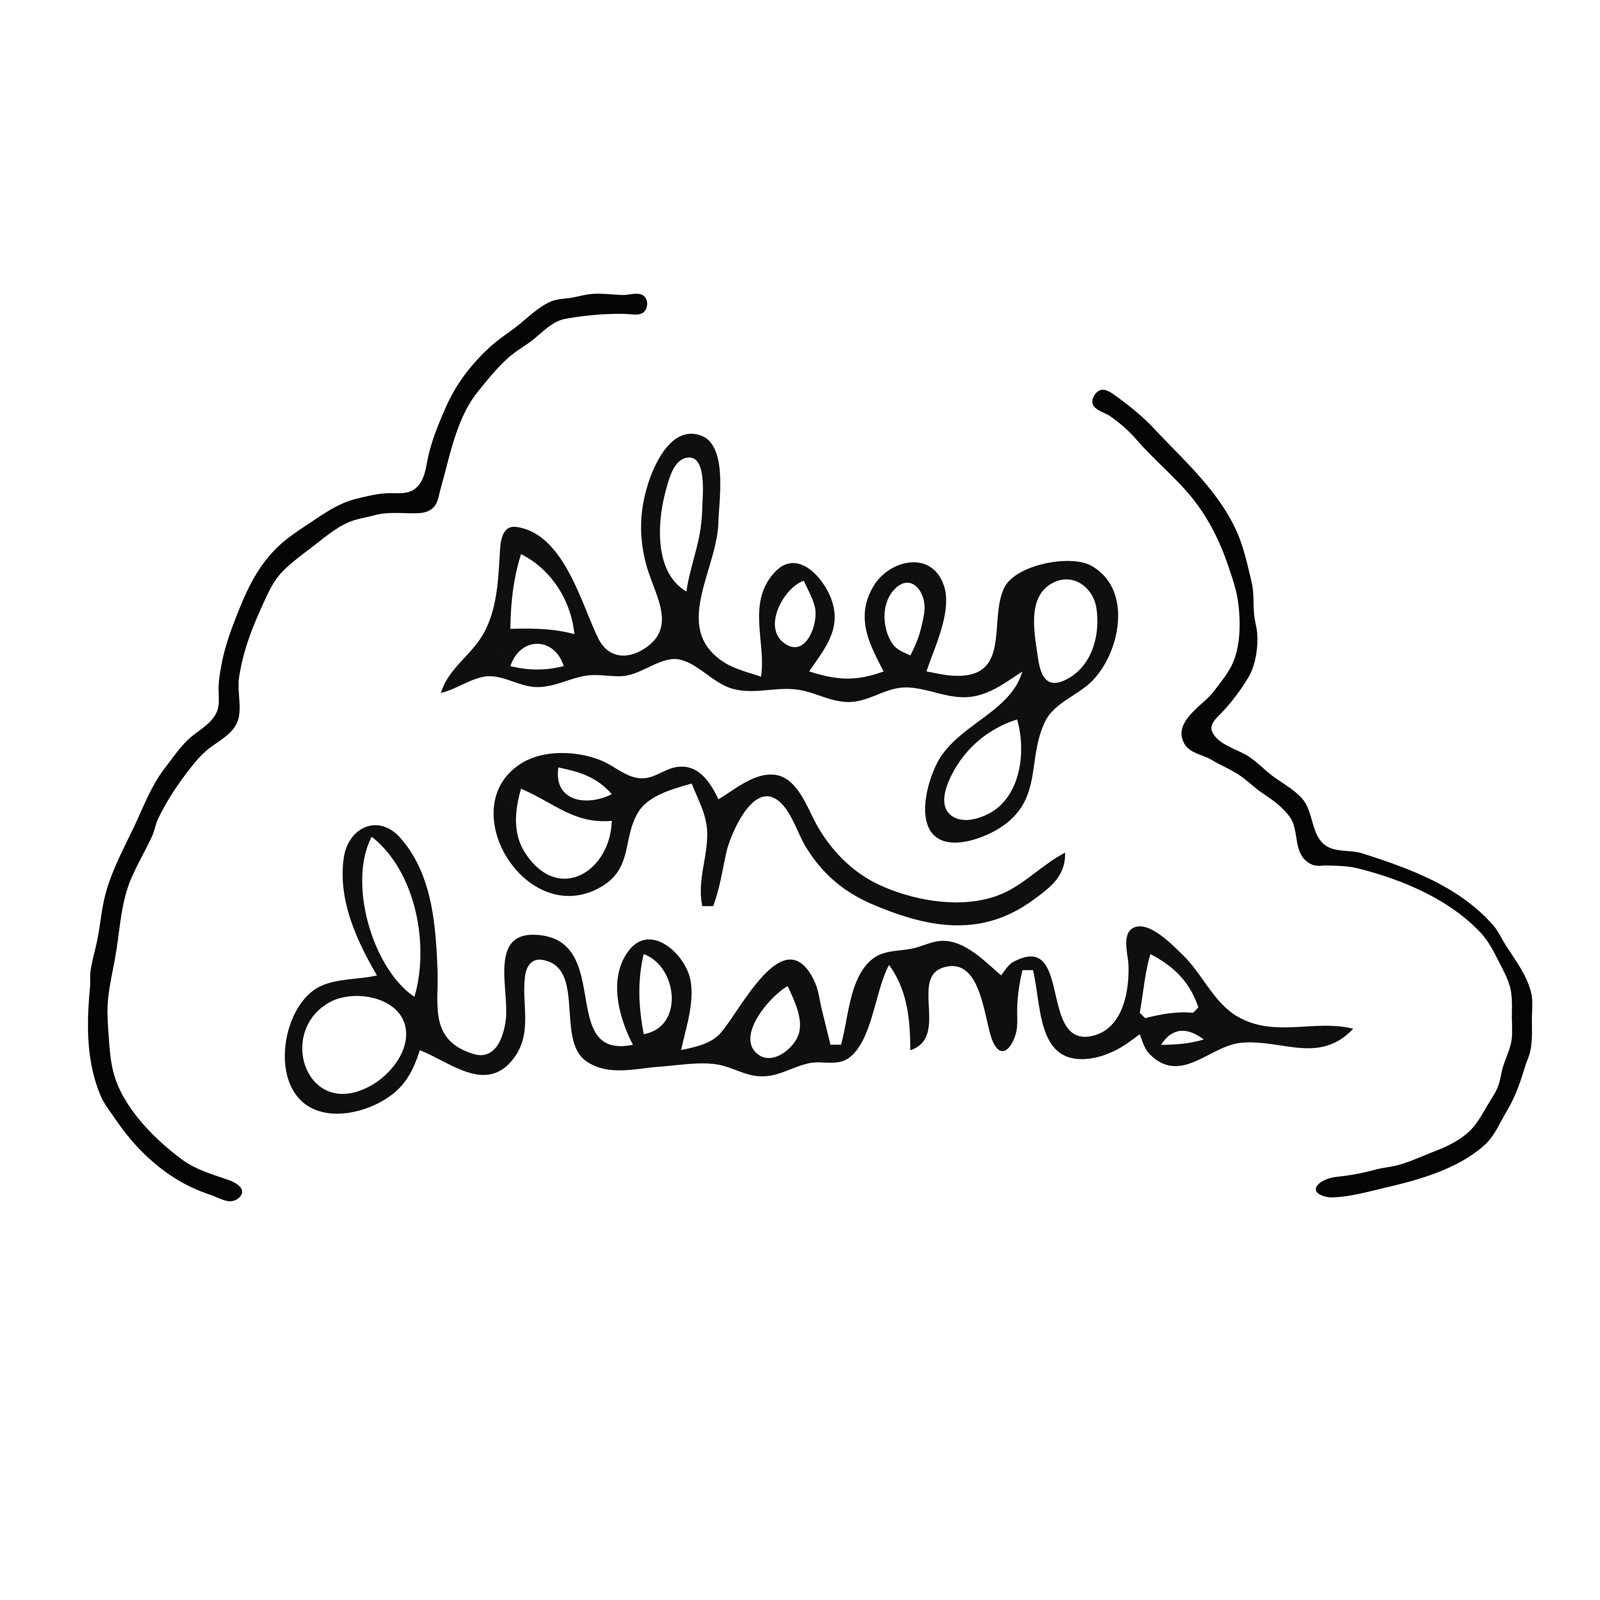 sleep on dreams